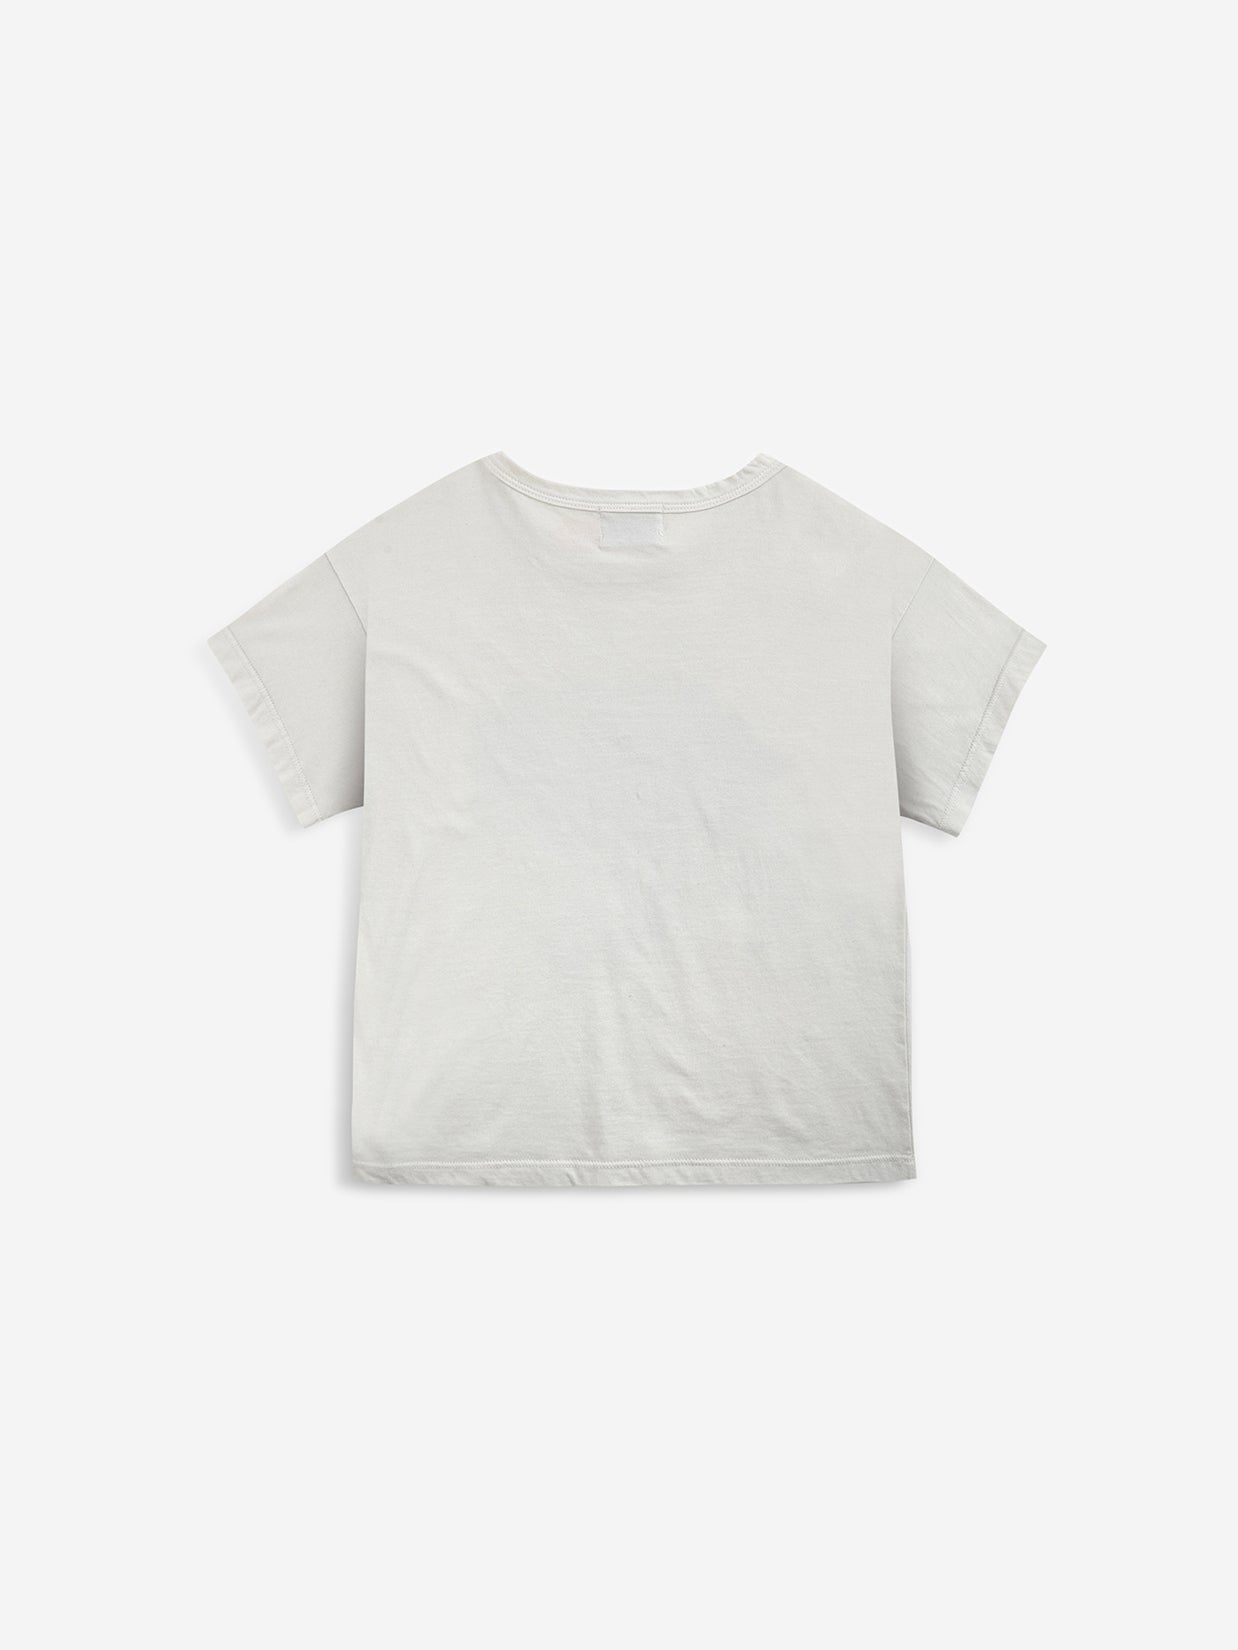 Cloud short sleeve T-shirt